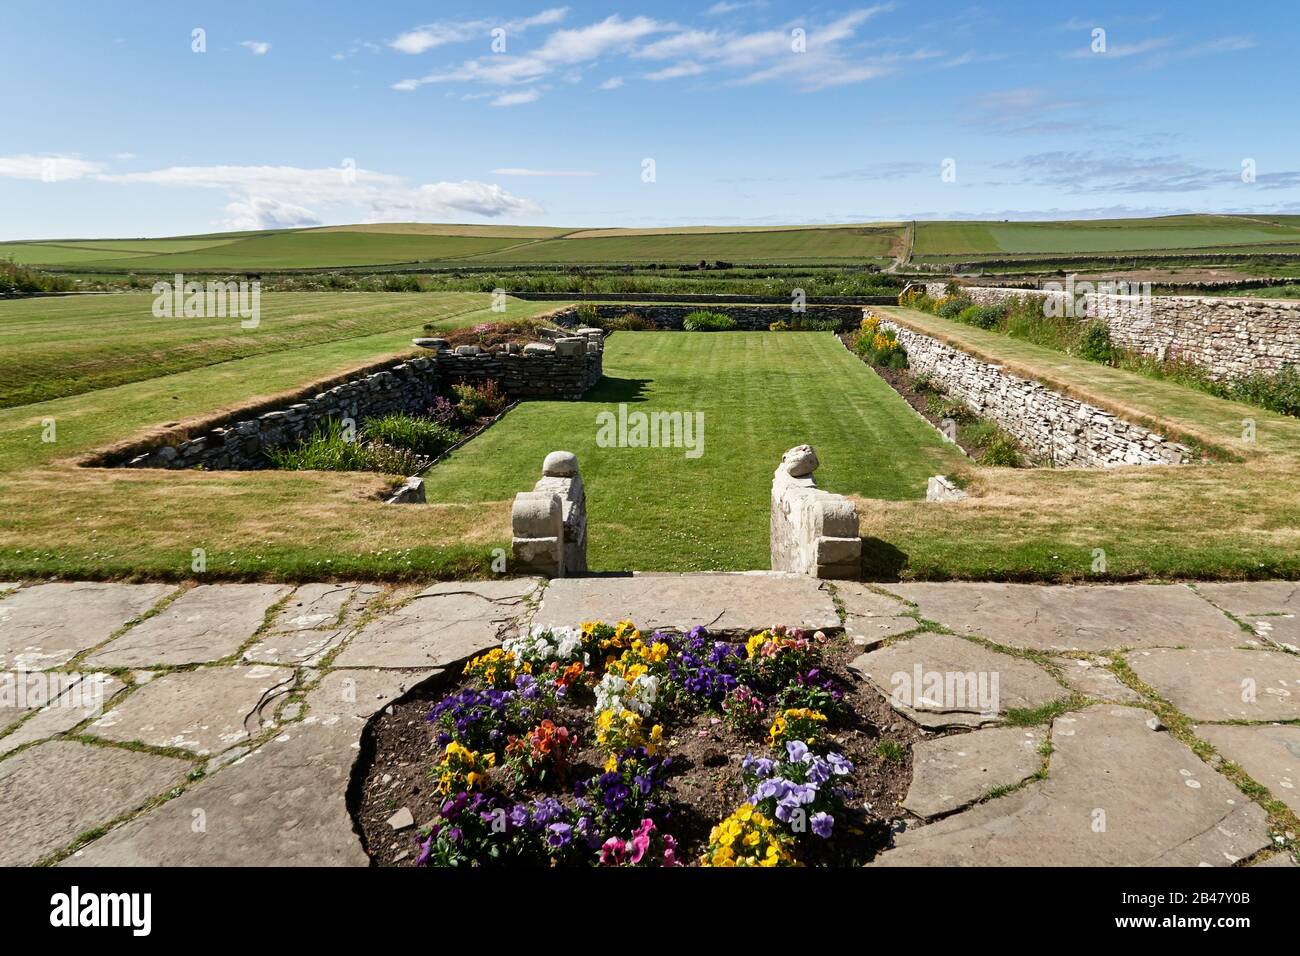 Royaume-Uni, Écosse, Orkney Islands est un archipel dans les îles du Nord de l'Ecosse, , l'océan Atlantique, le parc dans le manoir de skaill, construit par un évêque en 1620, l'historique Skaill House est situé sur Mainland, le plus grand des îles Orkney, Banque D'Images